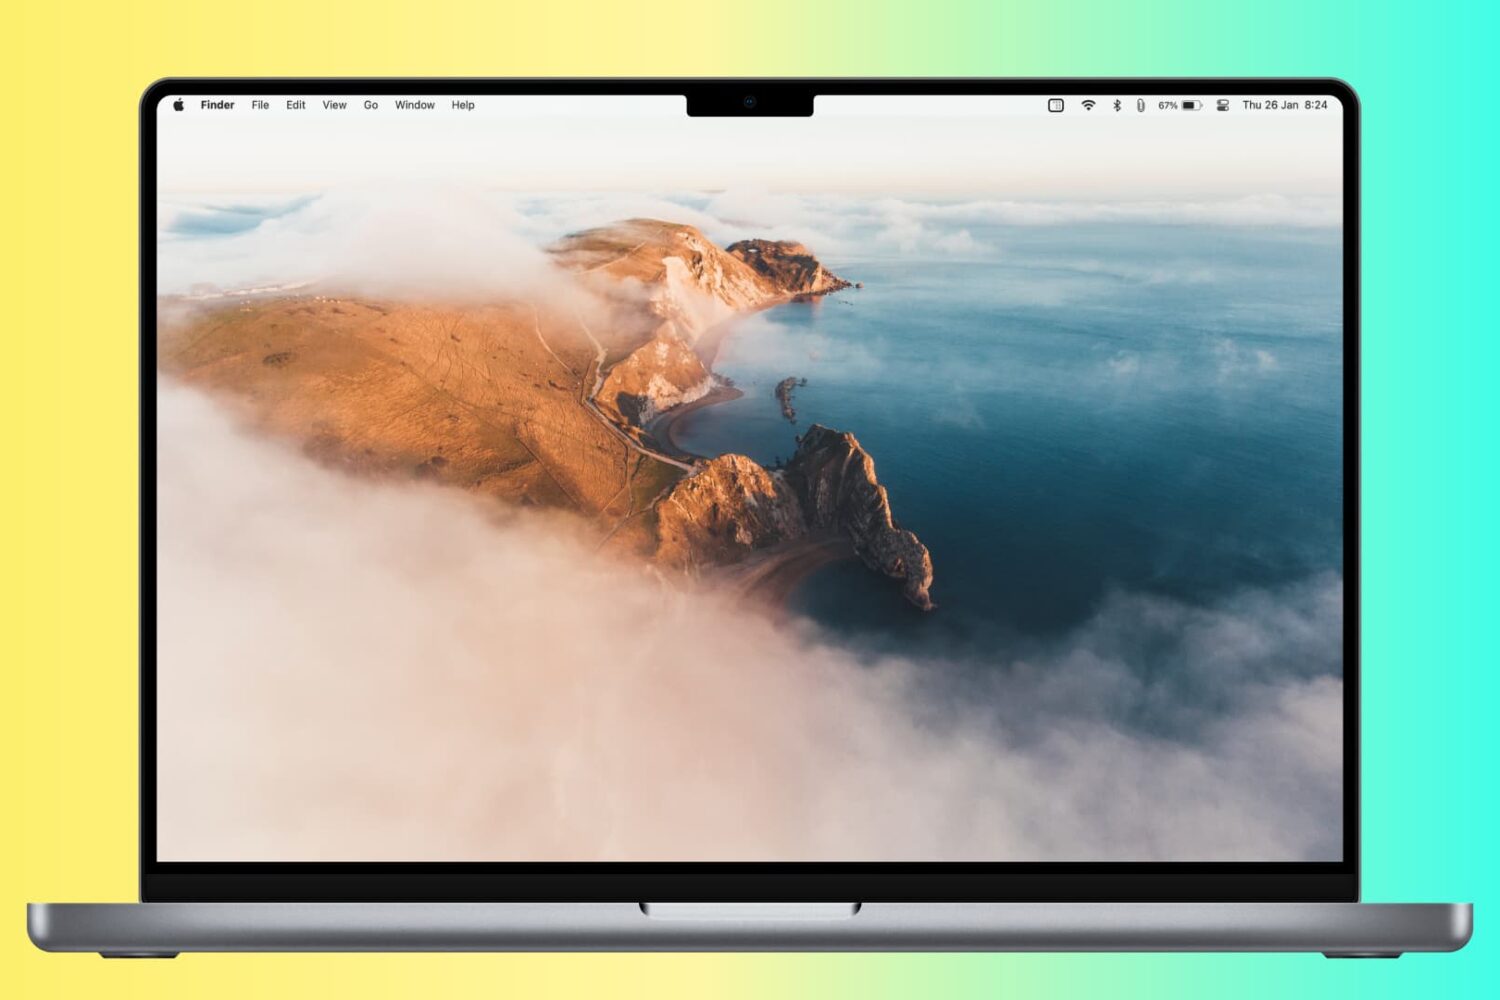 MacBook desktop with the Dock hidden from the screen